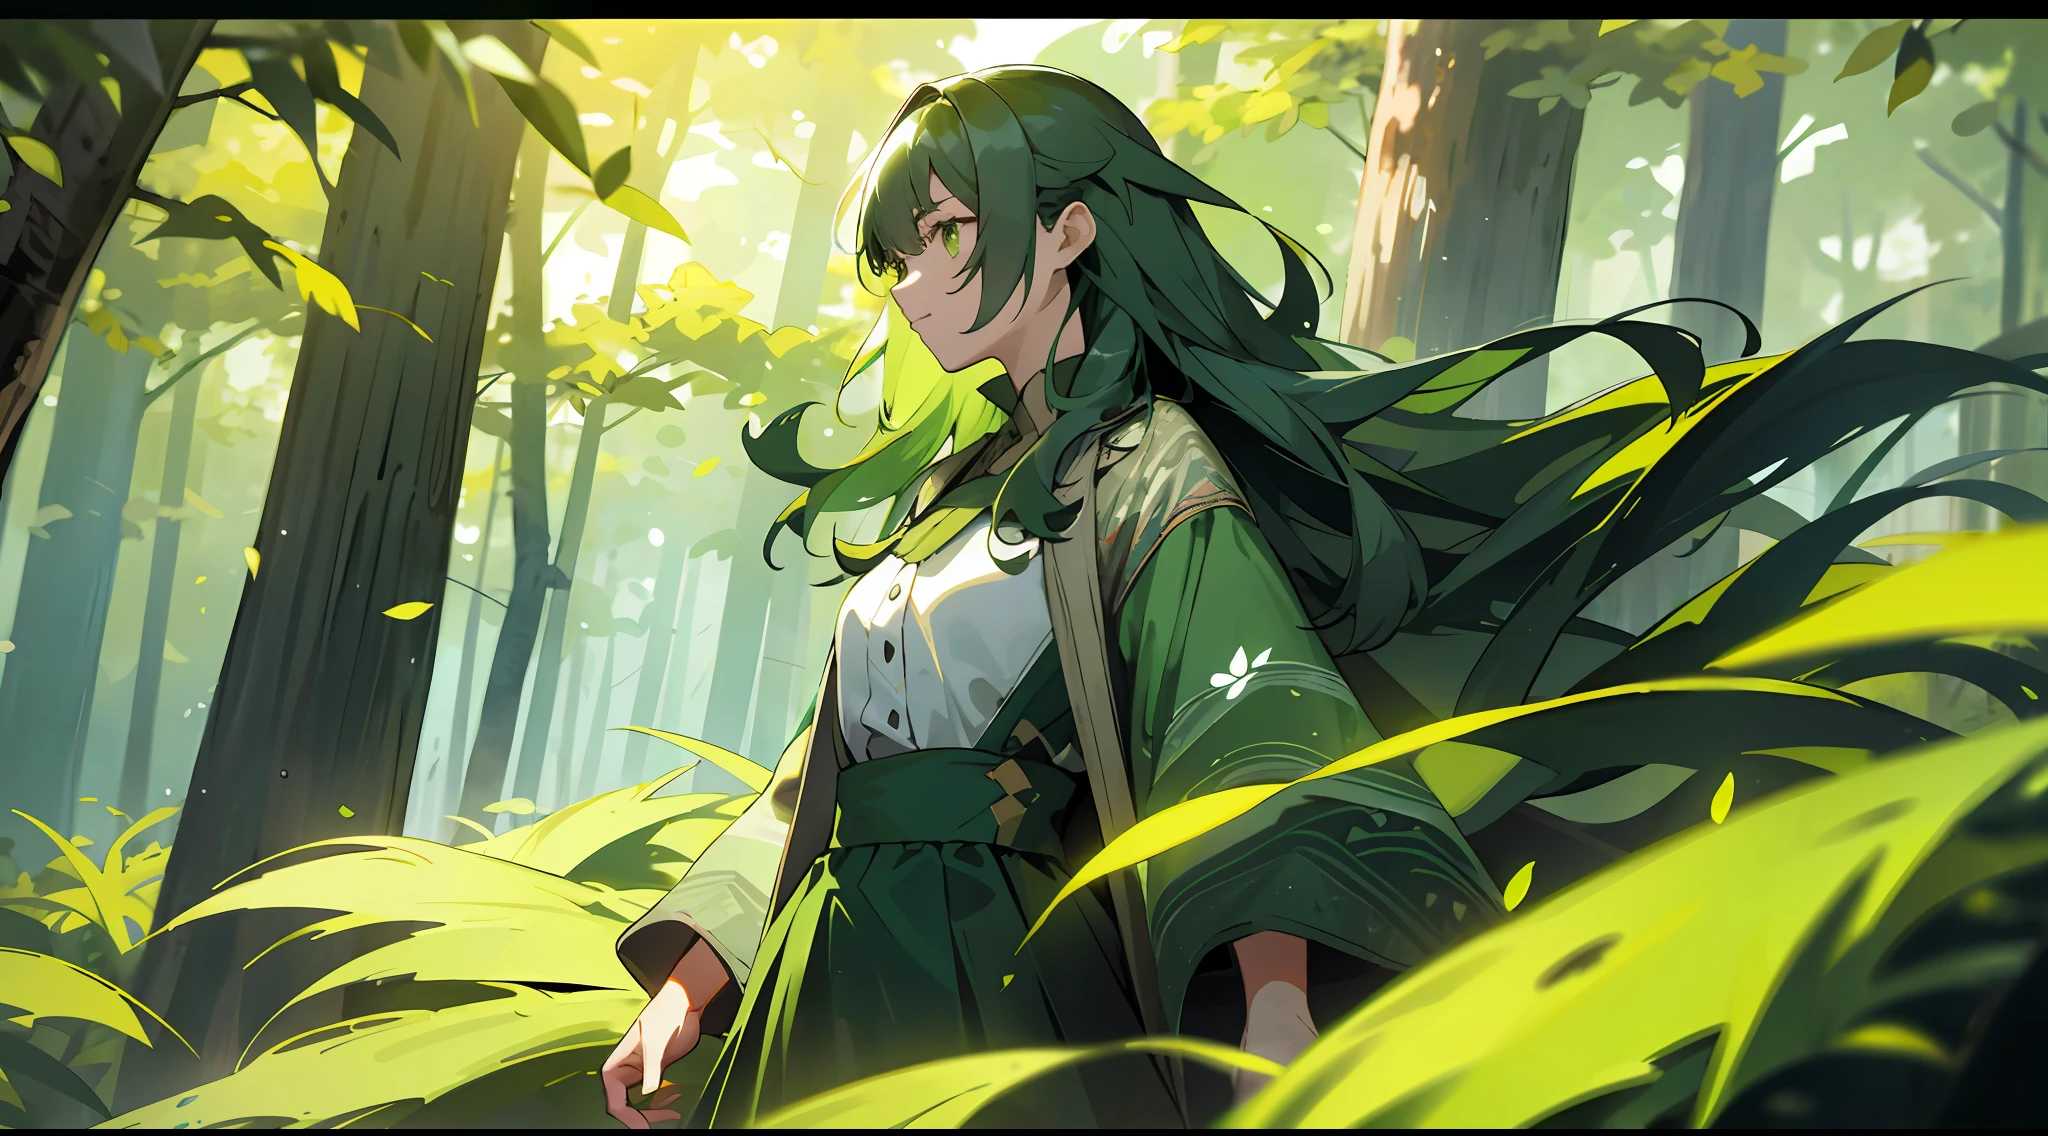 一个女人, 綠葉狂野的頭髮, 森林衣服, 被綠狼包圍, 在魔法森林裡